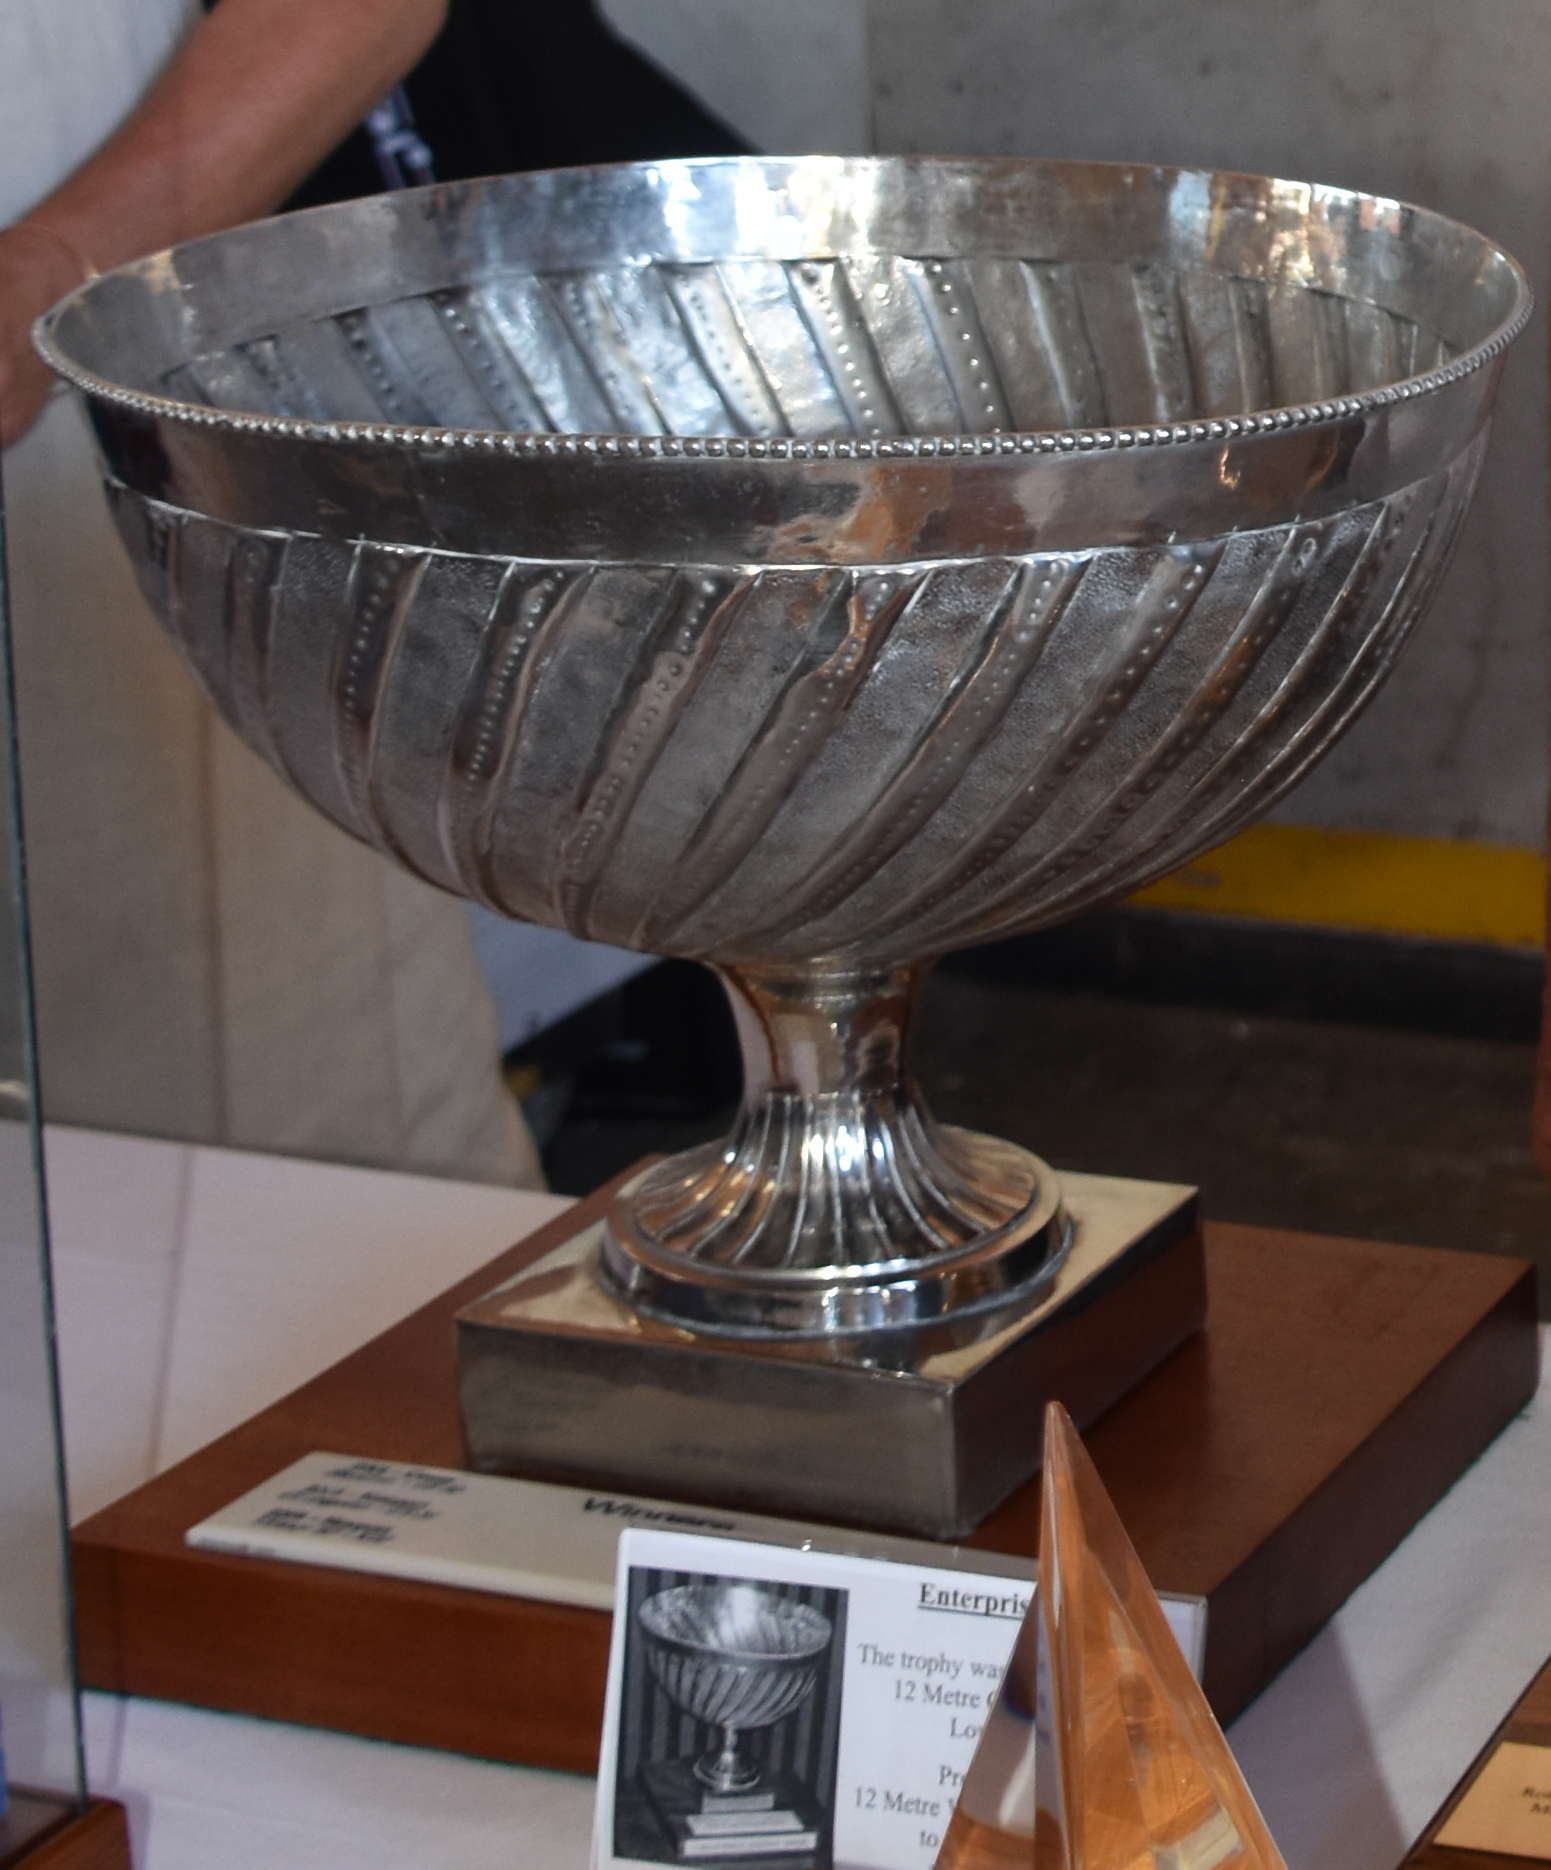 Enterprise, 12 Metre World Championship Trophy